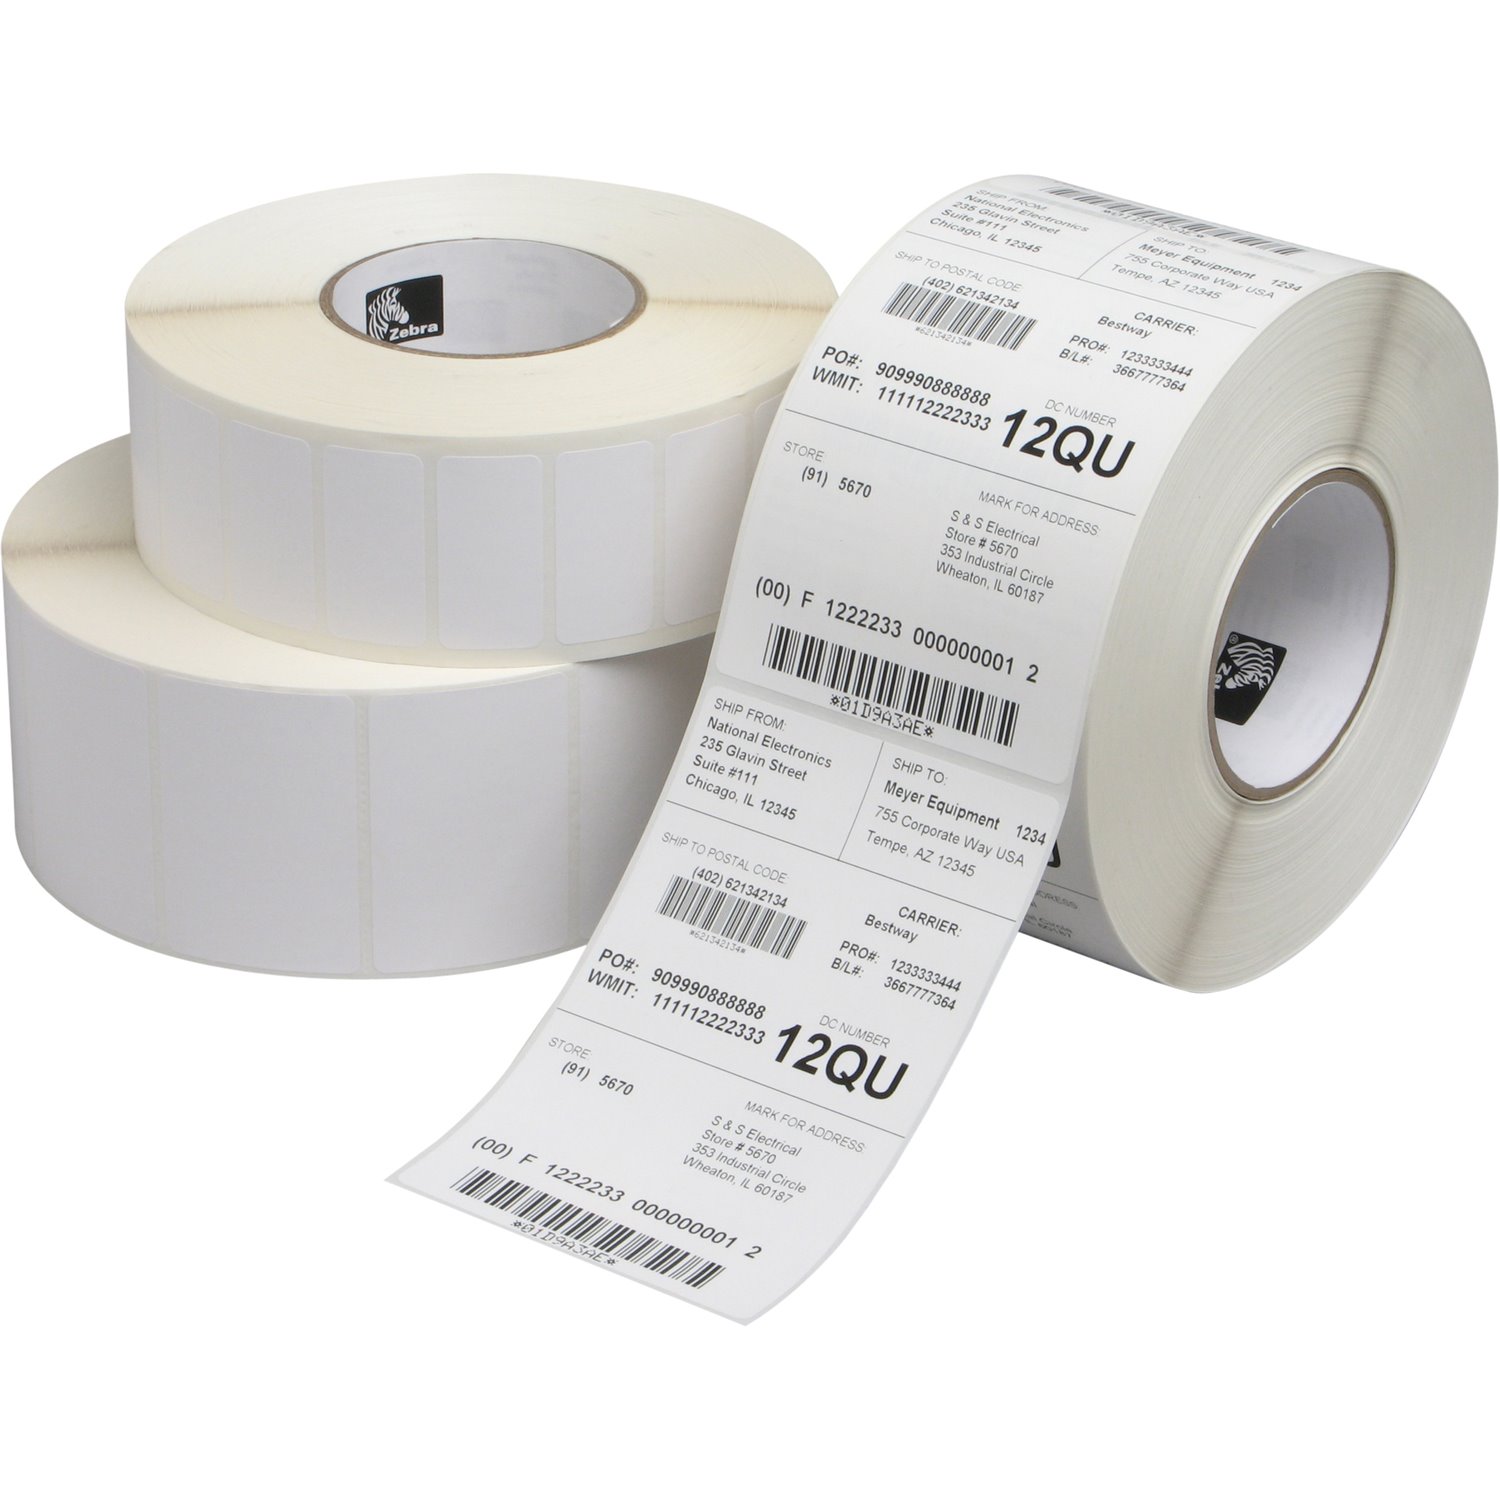 Zebra Label Paper 2.25x1.25in Direct Thermal Zebra Z-Select 4000D